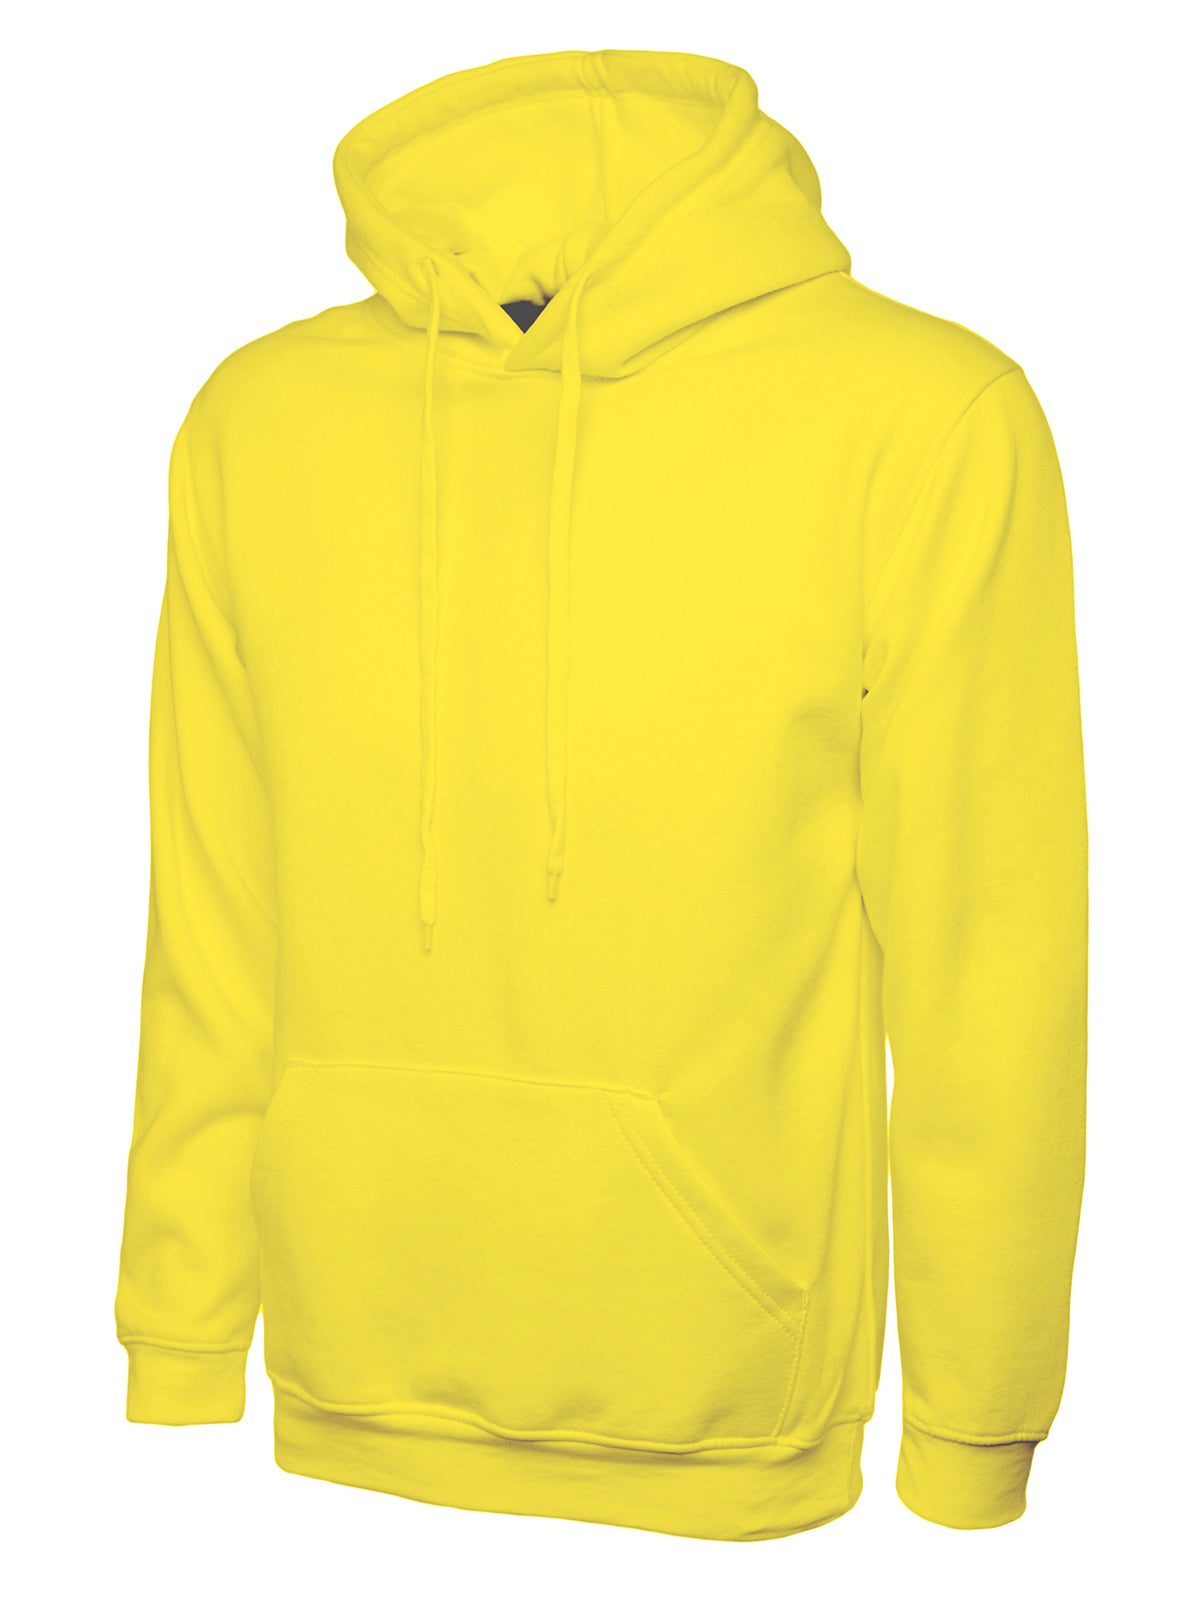 Uneek Classic Hoodie Sweatshirt - Yellow